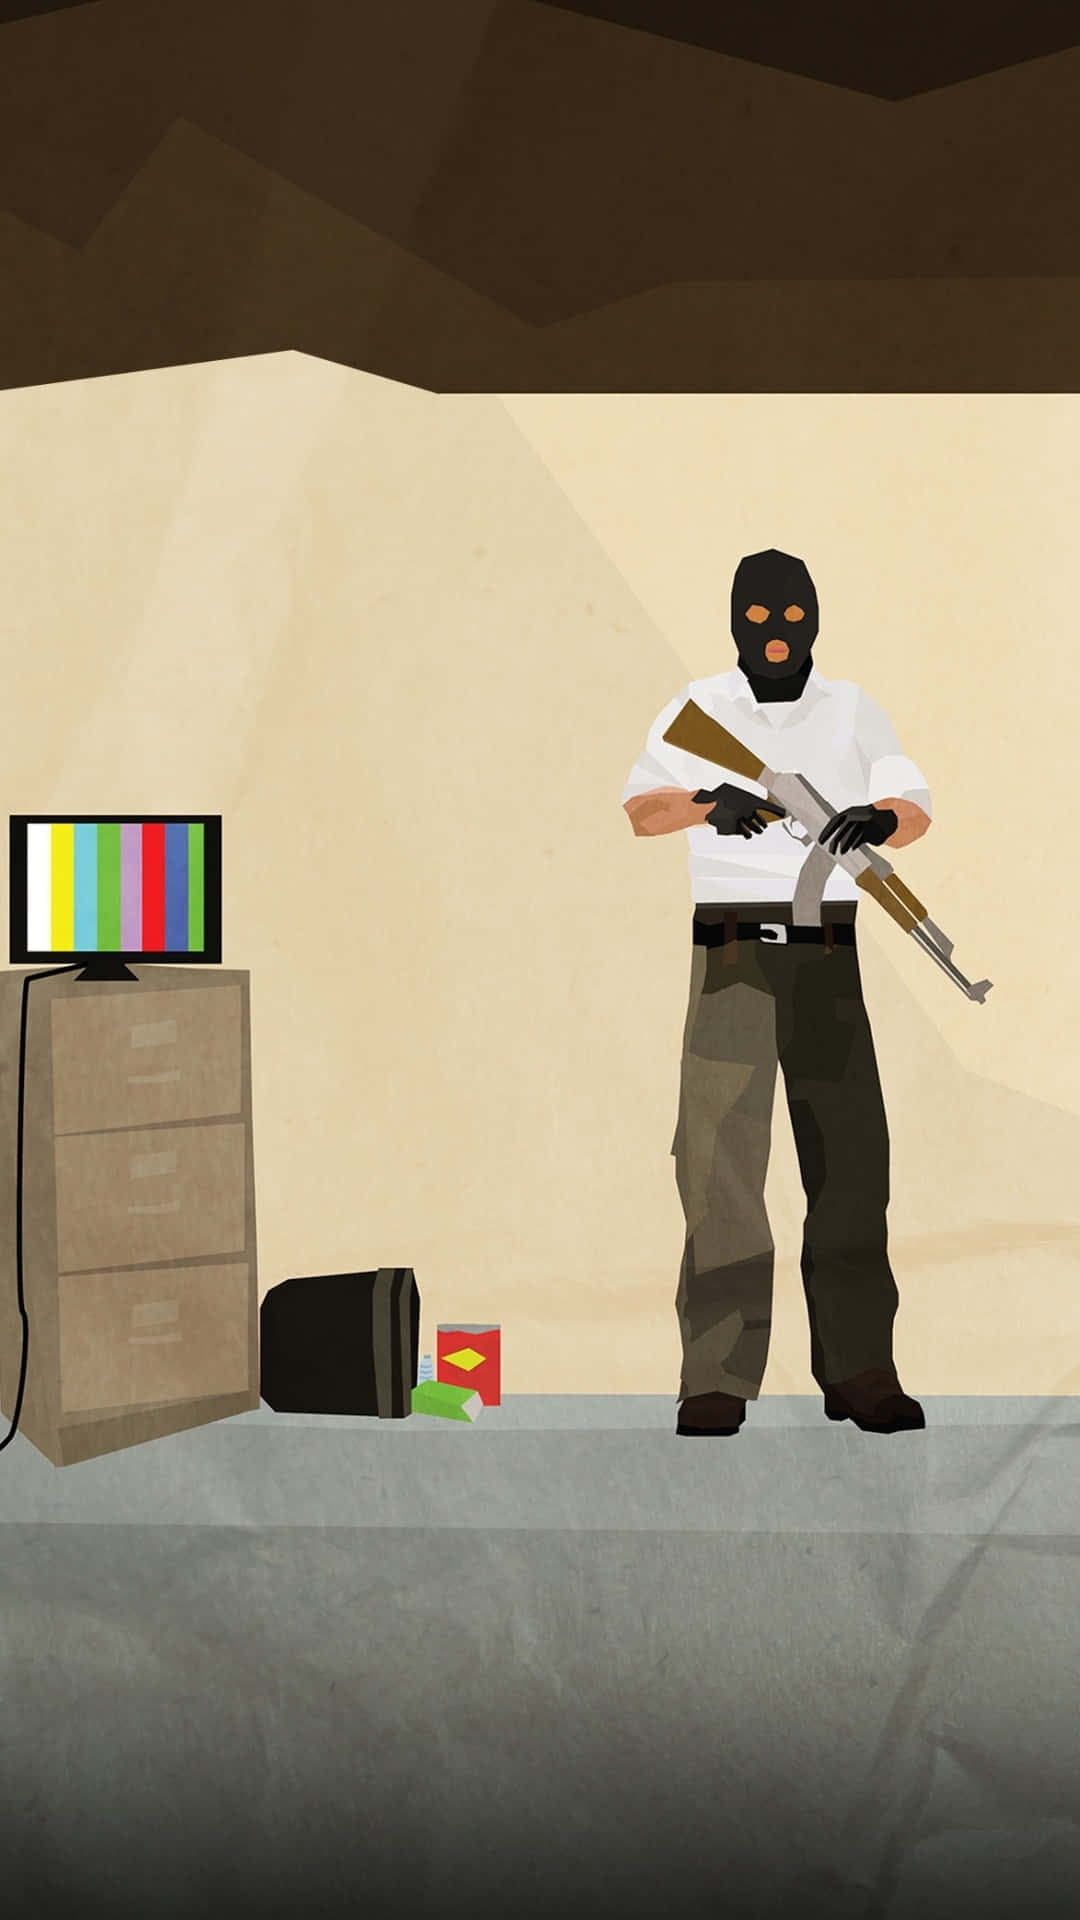 Fondode Pantalla De Android De Dibujo De Arte Fanático De Counter-strike Global Offensive, Con Un Terrorista Dibujado En El Fondo De Una Habitación.